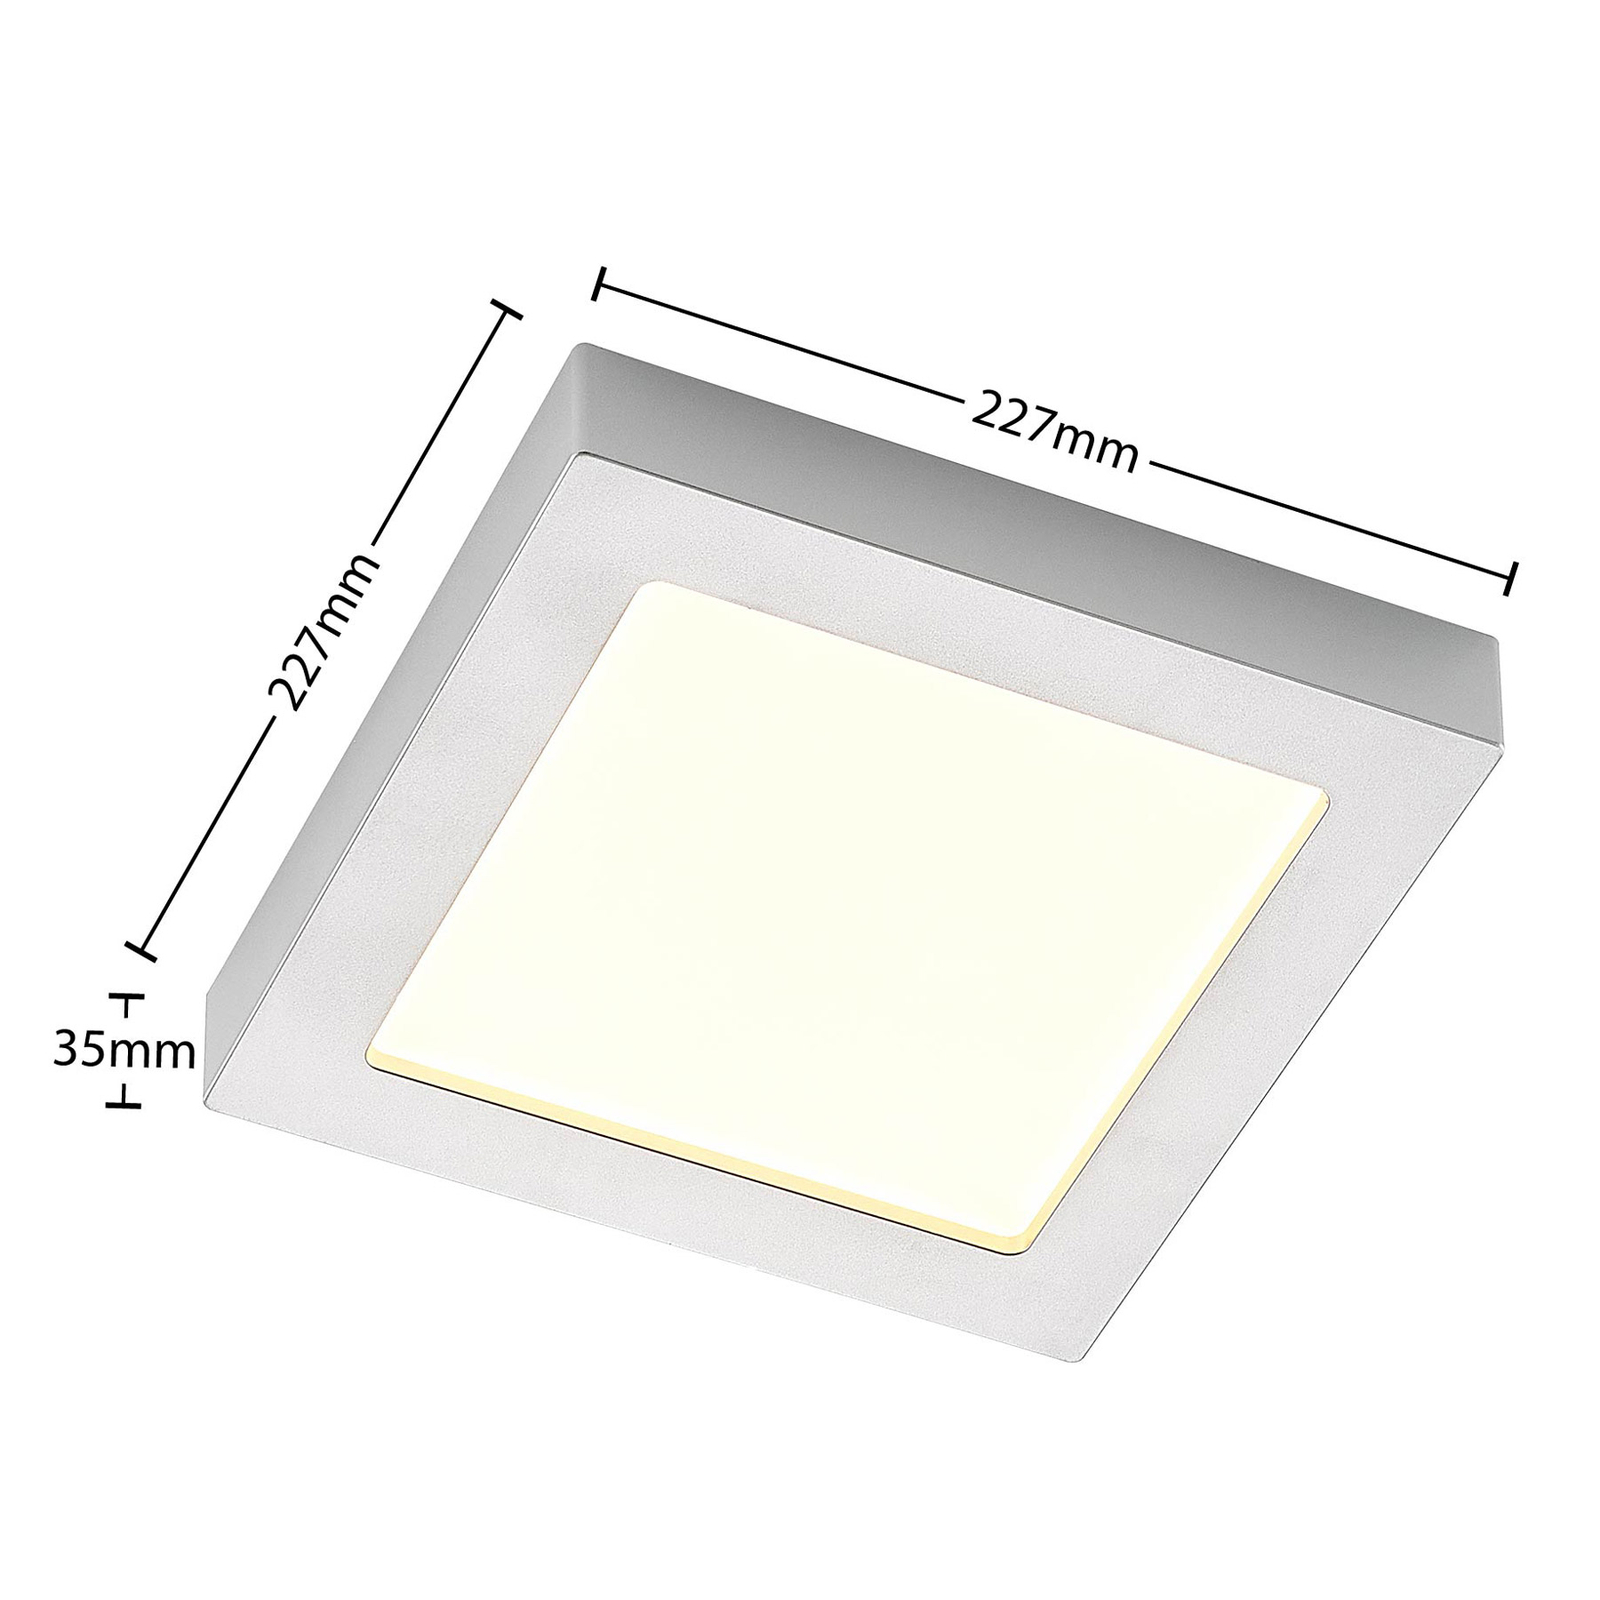 Prios Alette LED-Deckenleuchte, silber 22,7 cm 24W